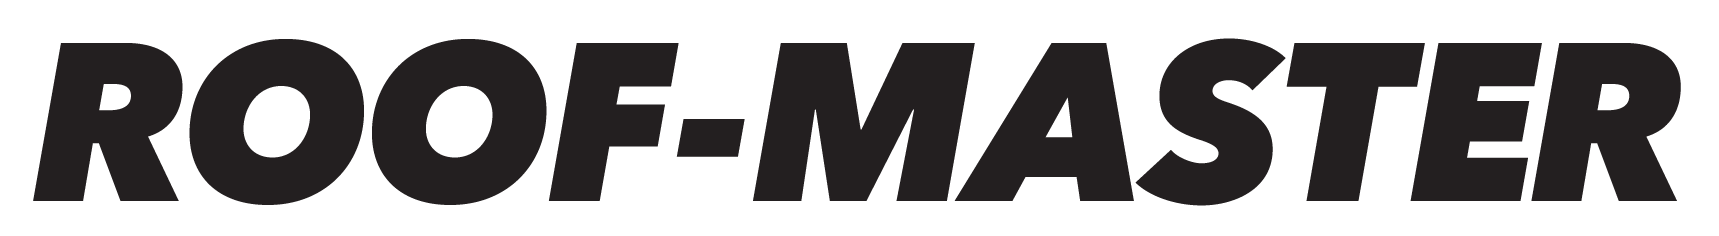 J & L Building Materials Inc. Distributor Logo